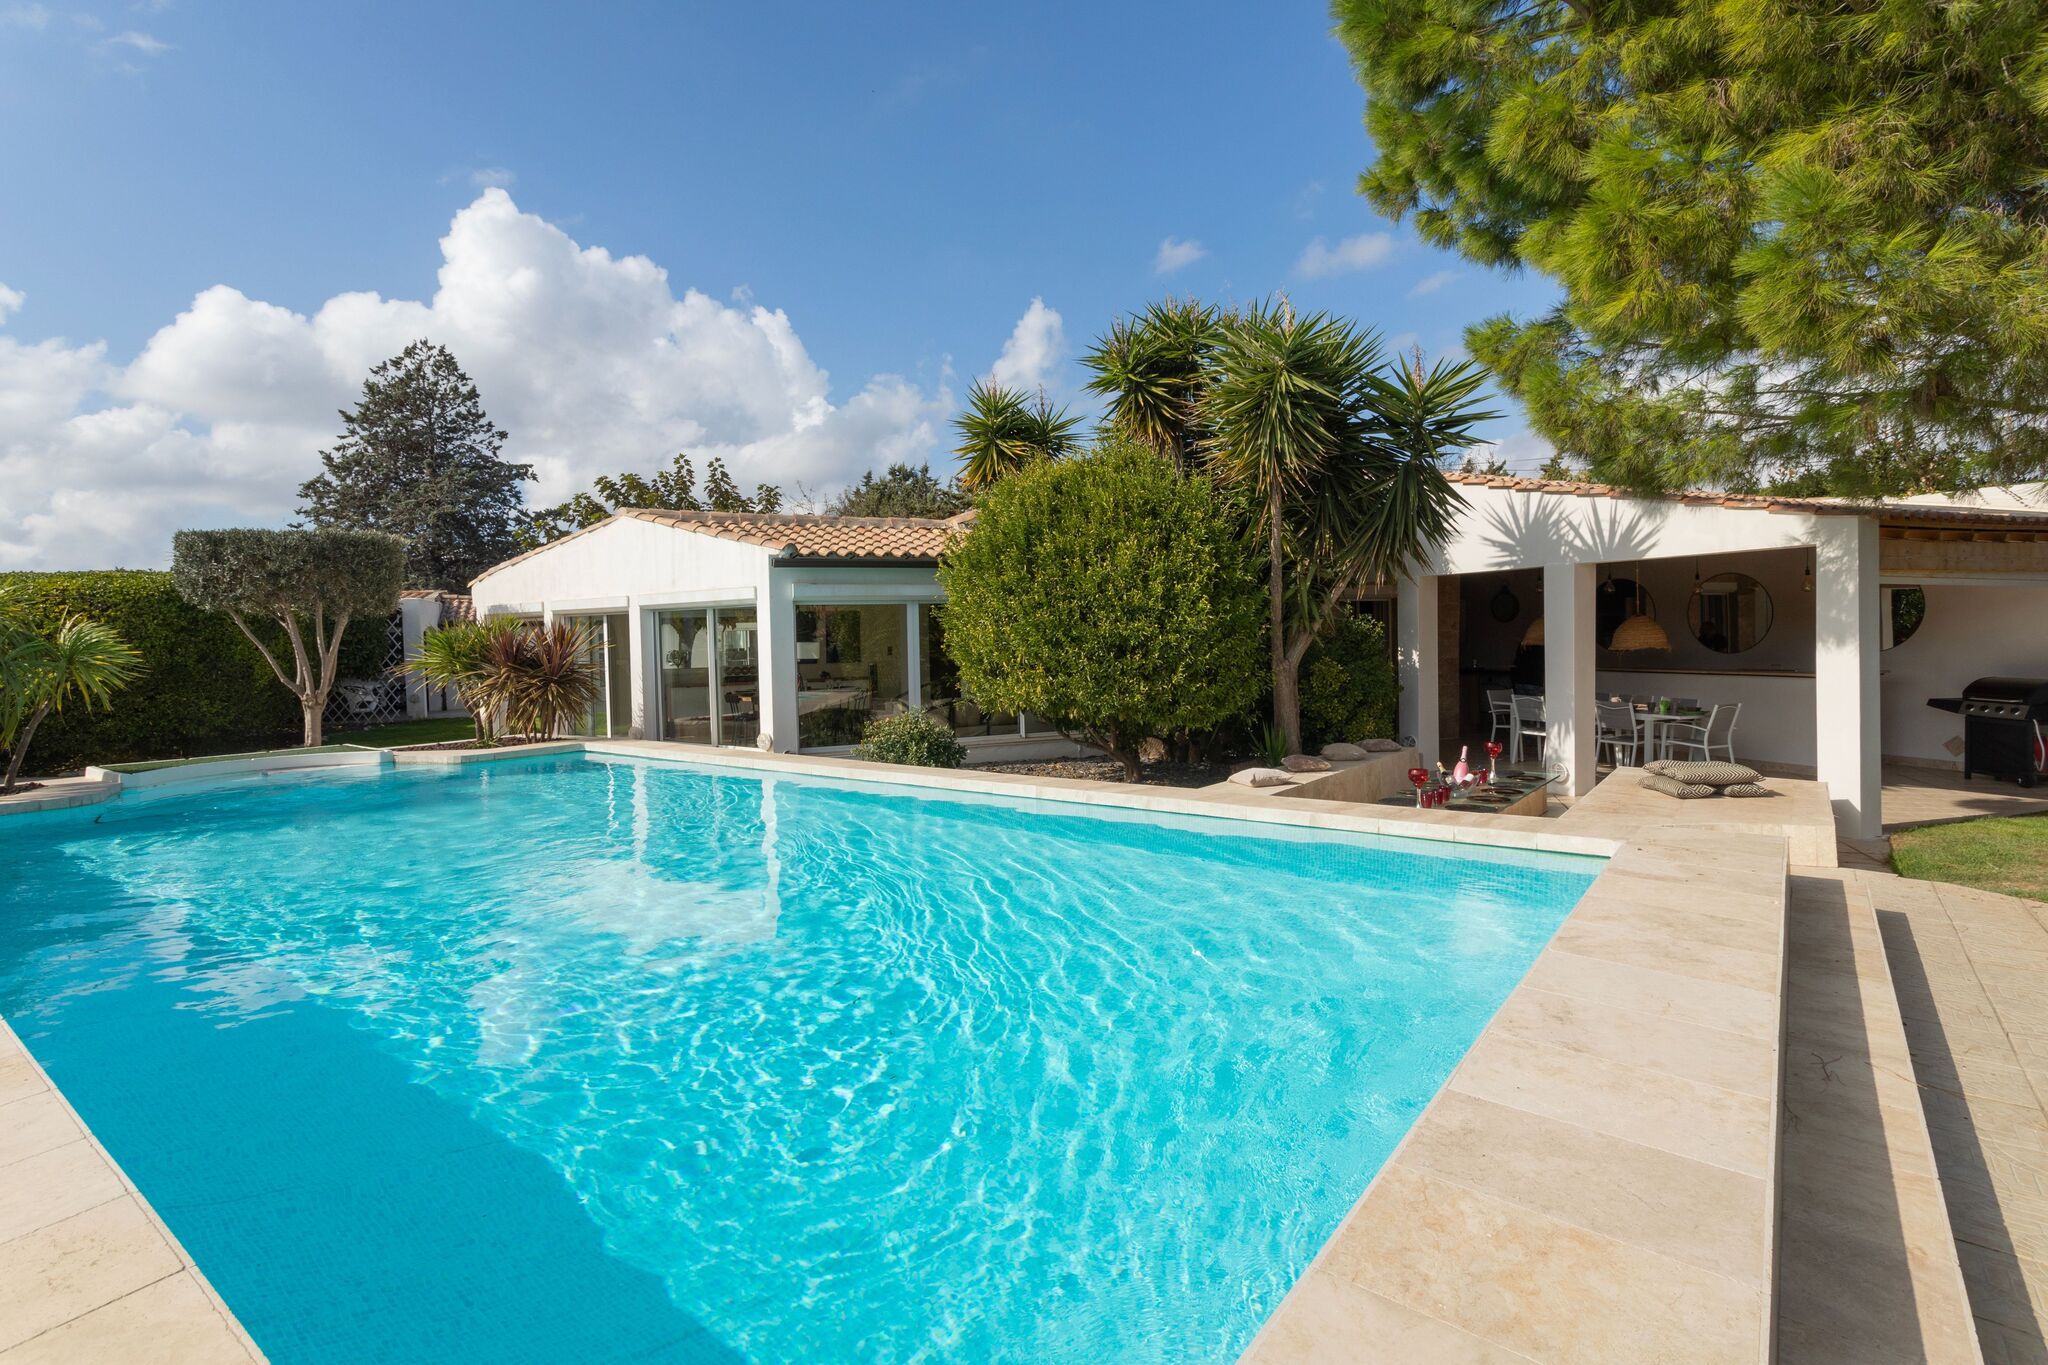 Vrijstaand vakantiehuis in Narbonne met een privézwembad